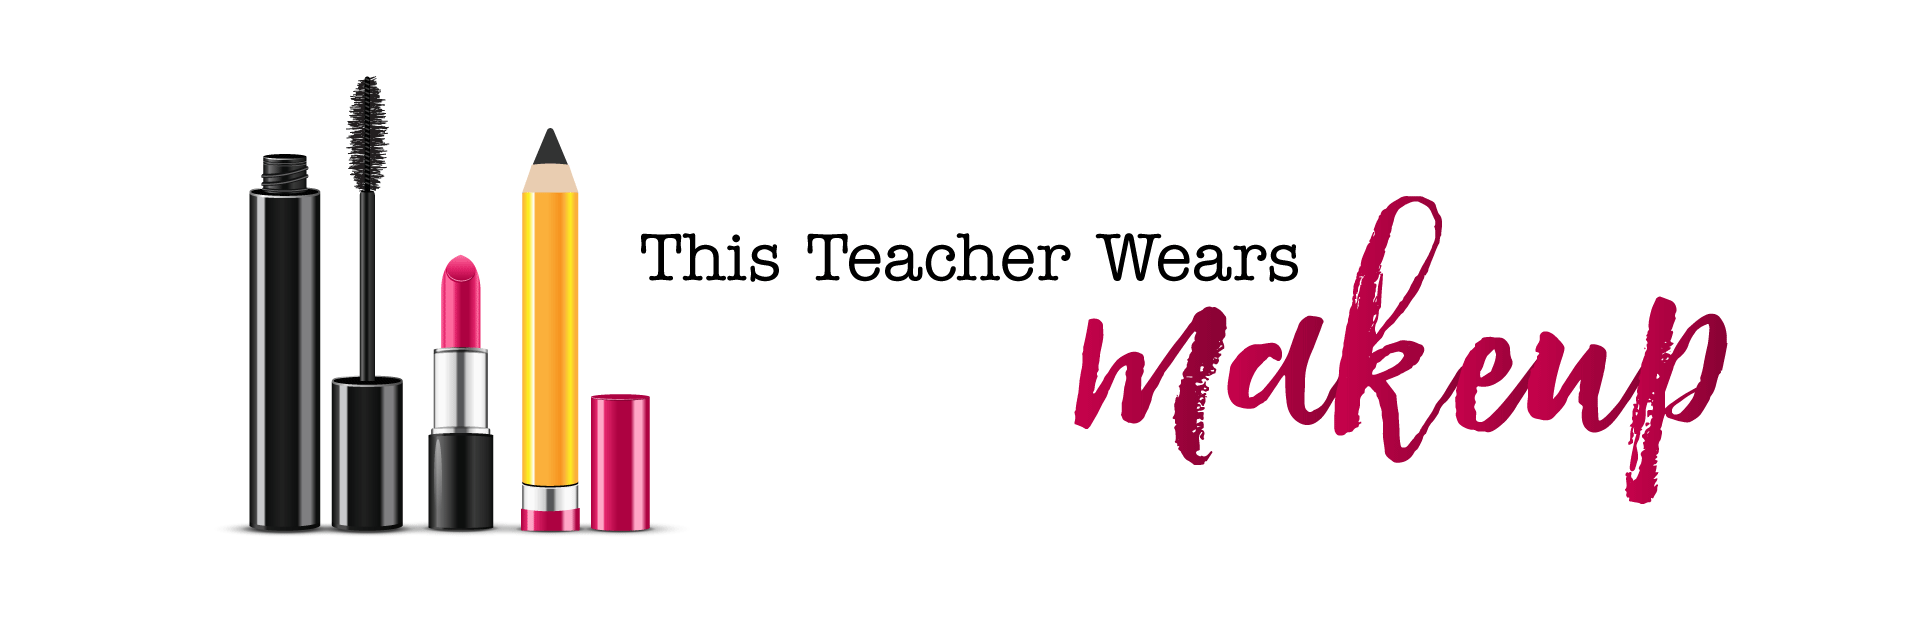 This teacher wears makeup.